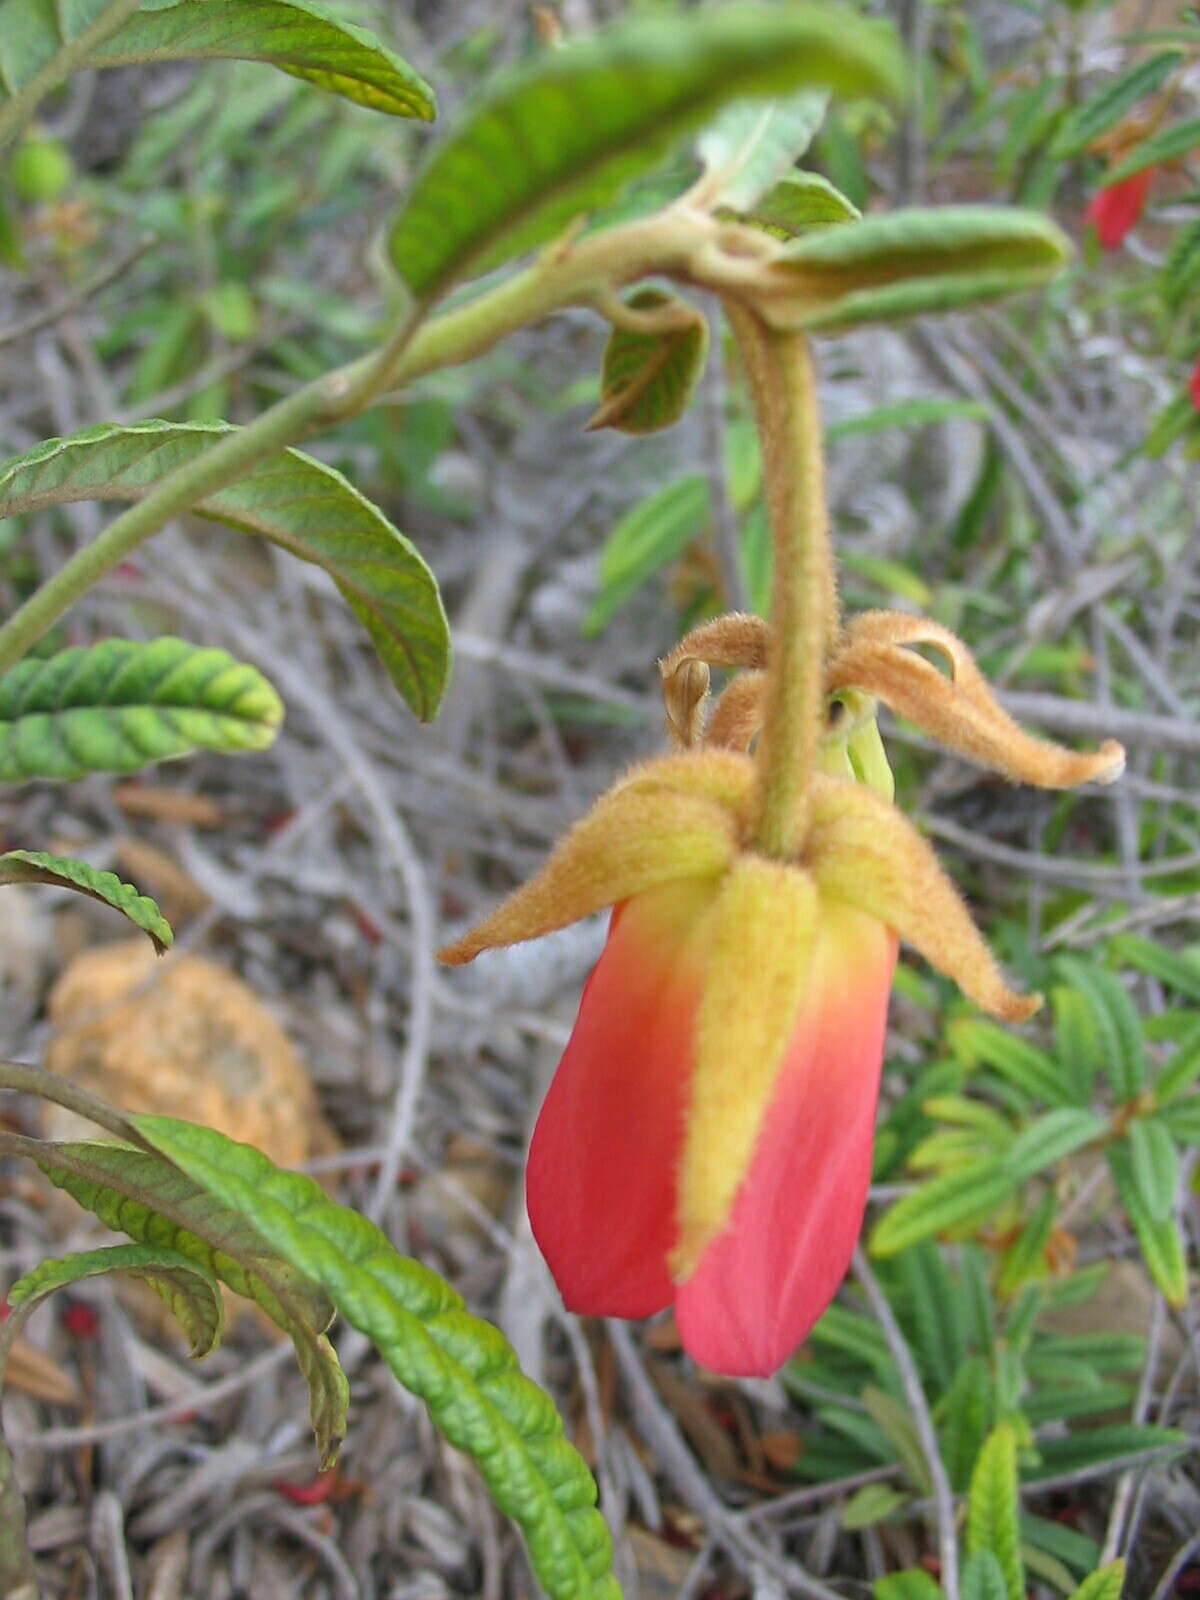 Image of Dubouzetia campanulata Panch. ex Brongn. & Gris